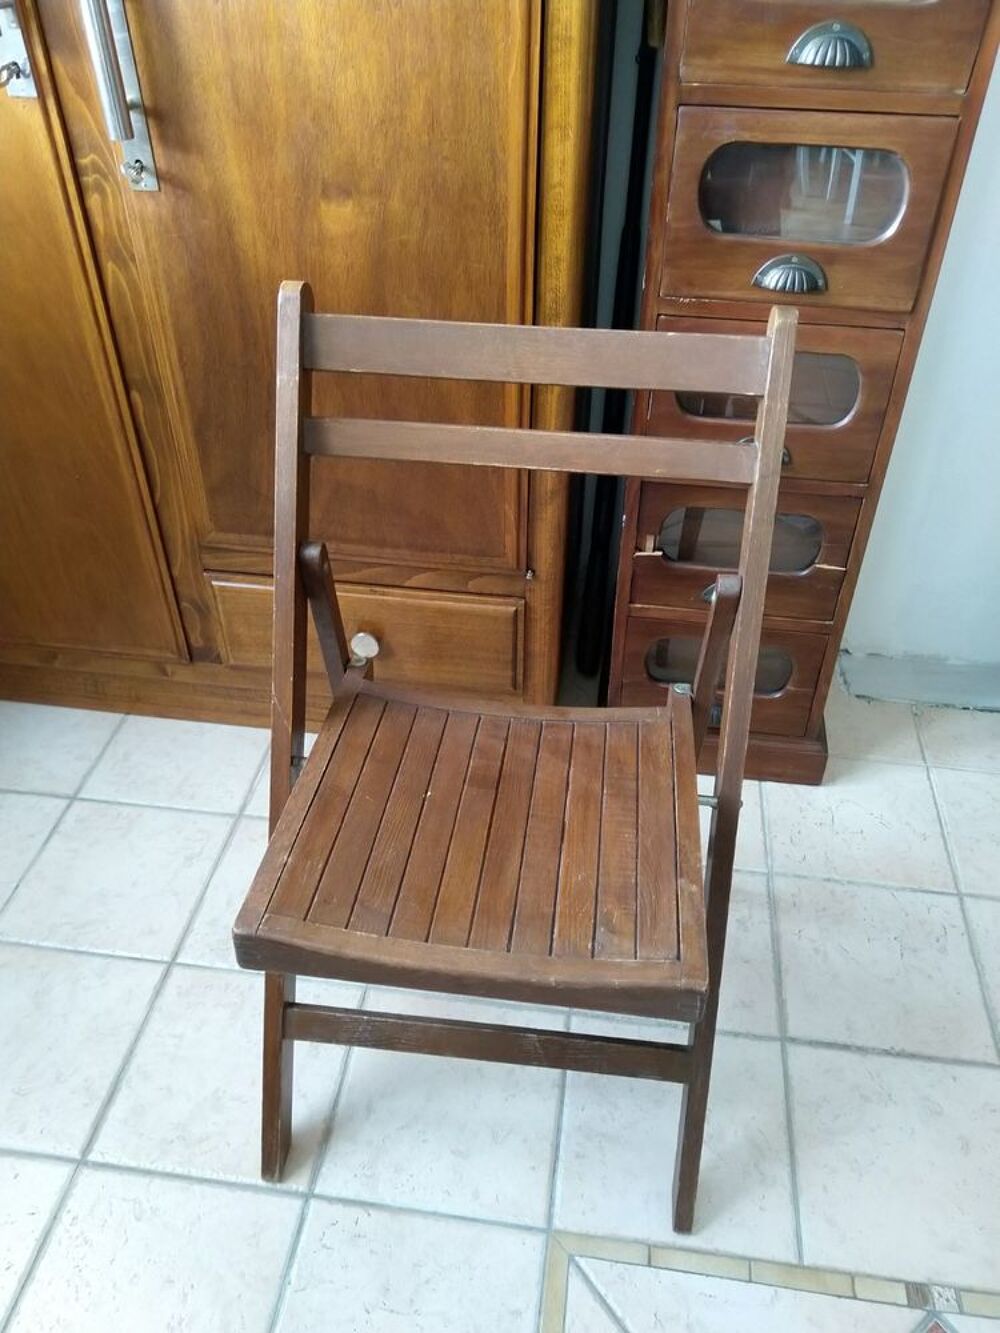 Chaise en bois pliante
Meubles